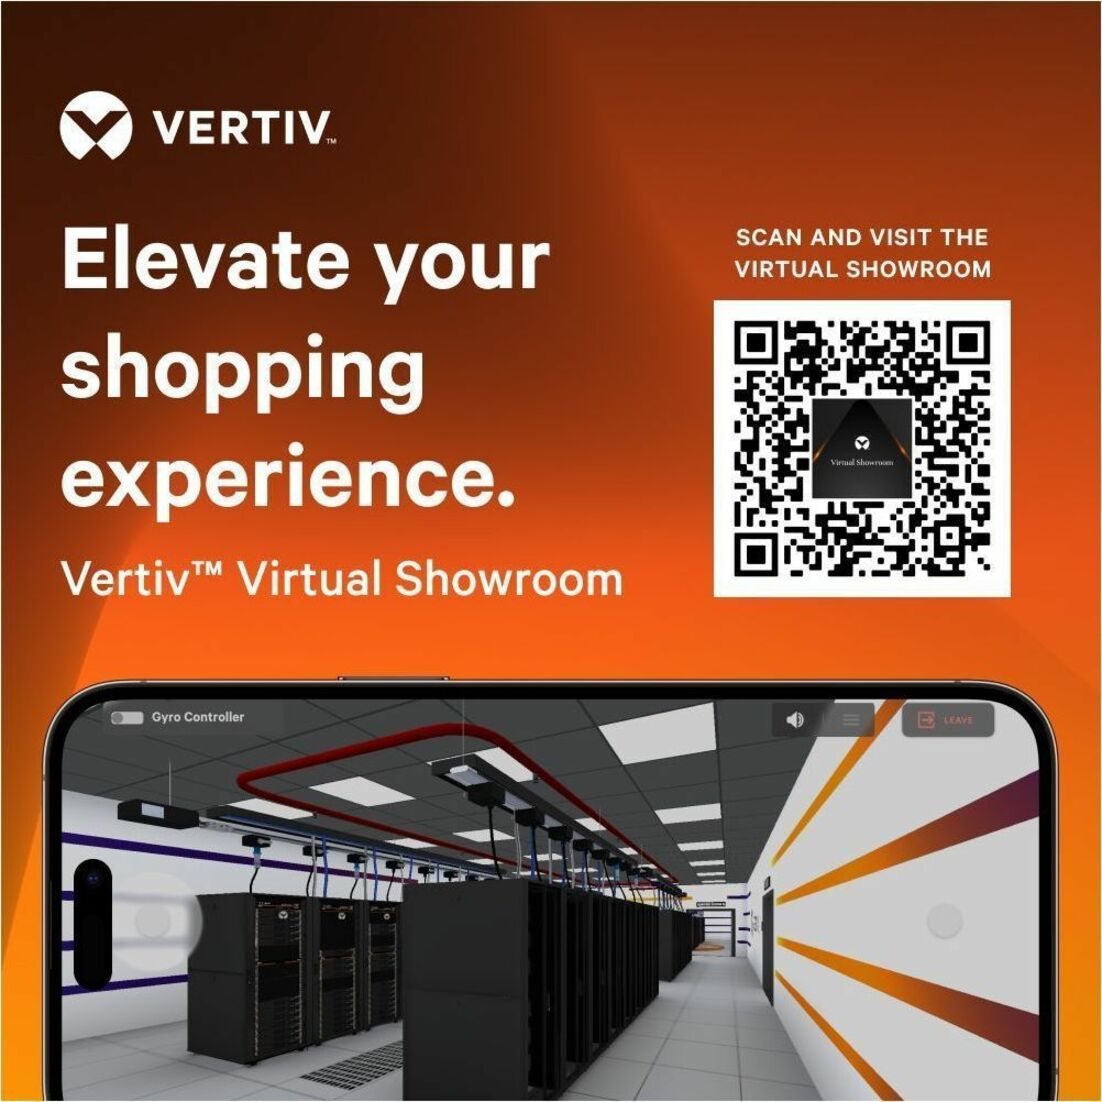 VERTIV VR3150 Vertiv VR Rack - 42U Server Rack Enclosure, 800x1100mm, 19-inch Cabinet - Efficient Storage Solution for Servers, KVM Switches, and More